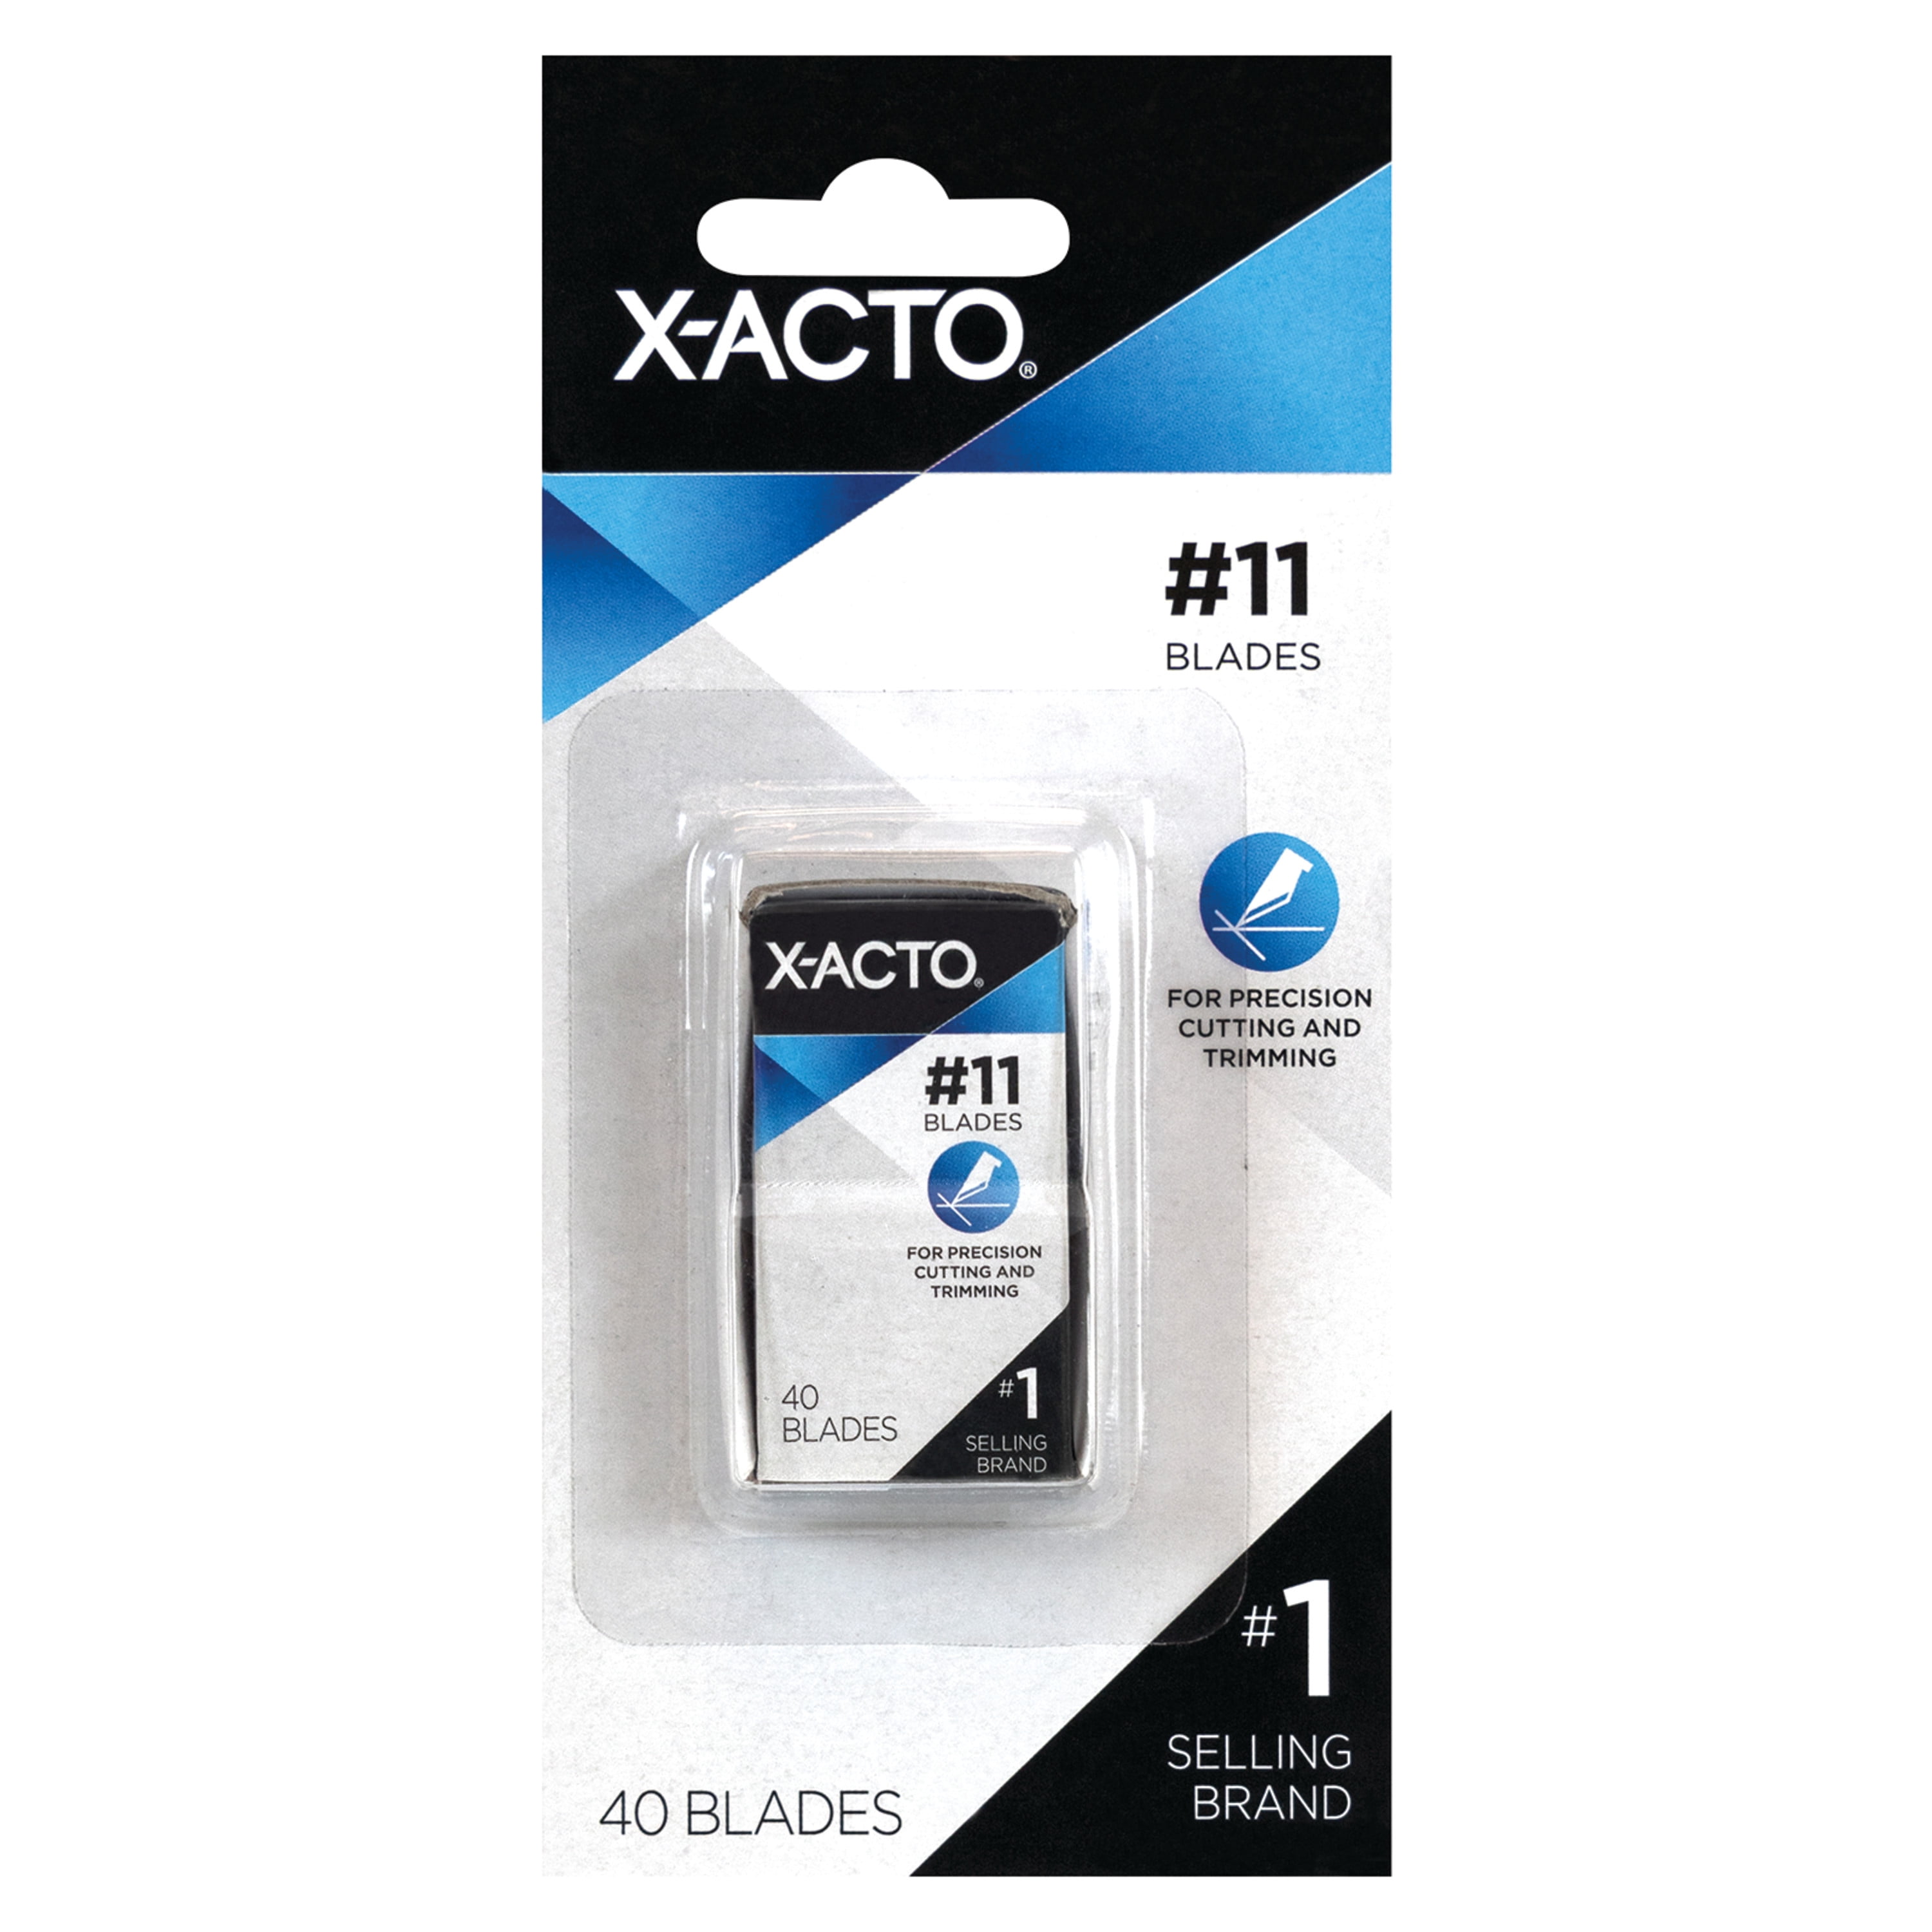 X-Acto X11 11 REPL BLADES PKG/5 XACTO (11) - Comtrade Store